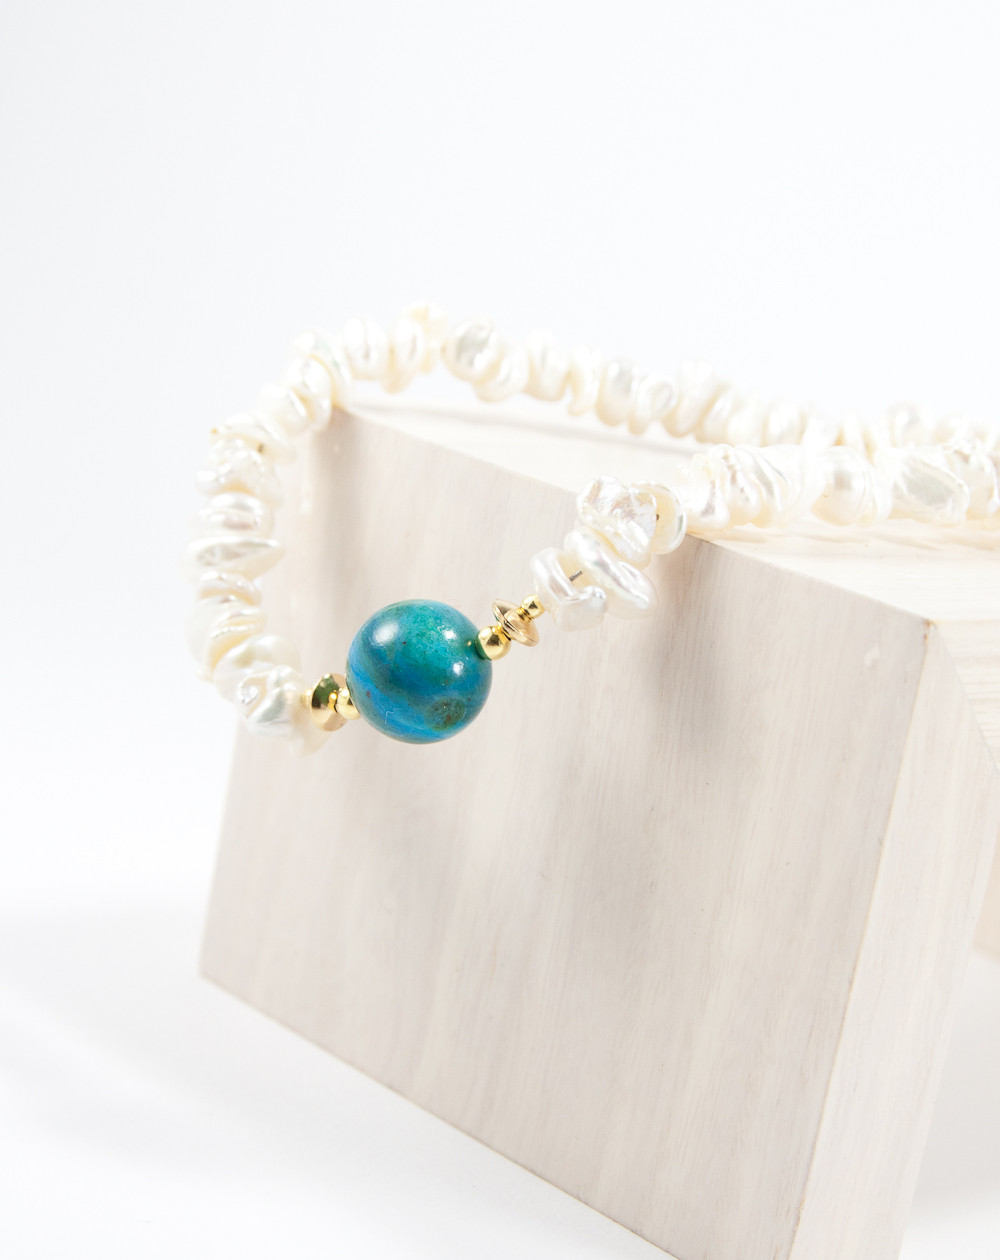 Collier Perles Keshi d'eau douce, Opale des Andes. Sanuk Création. Bayonne